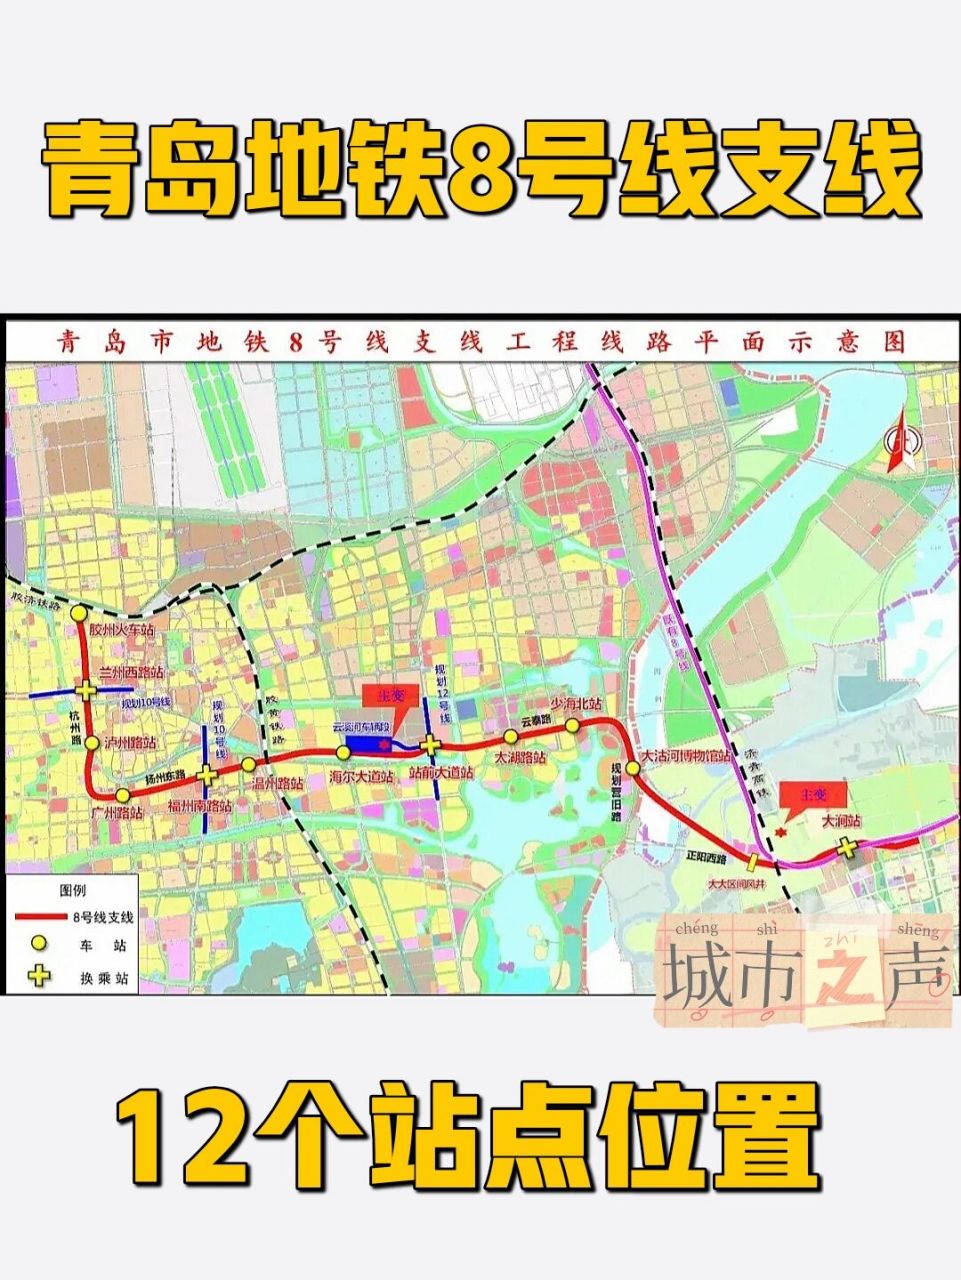 青岛地铁8号线支线环评公示,明确12个站点位 968号线支线:连接城阳